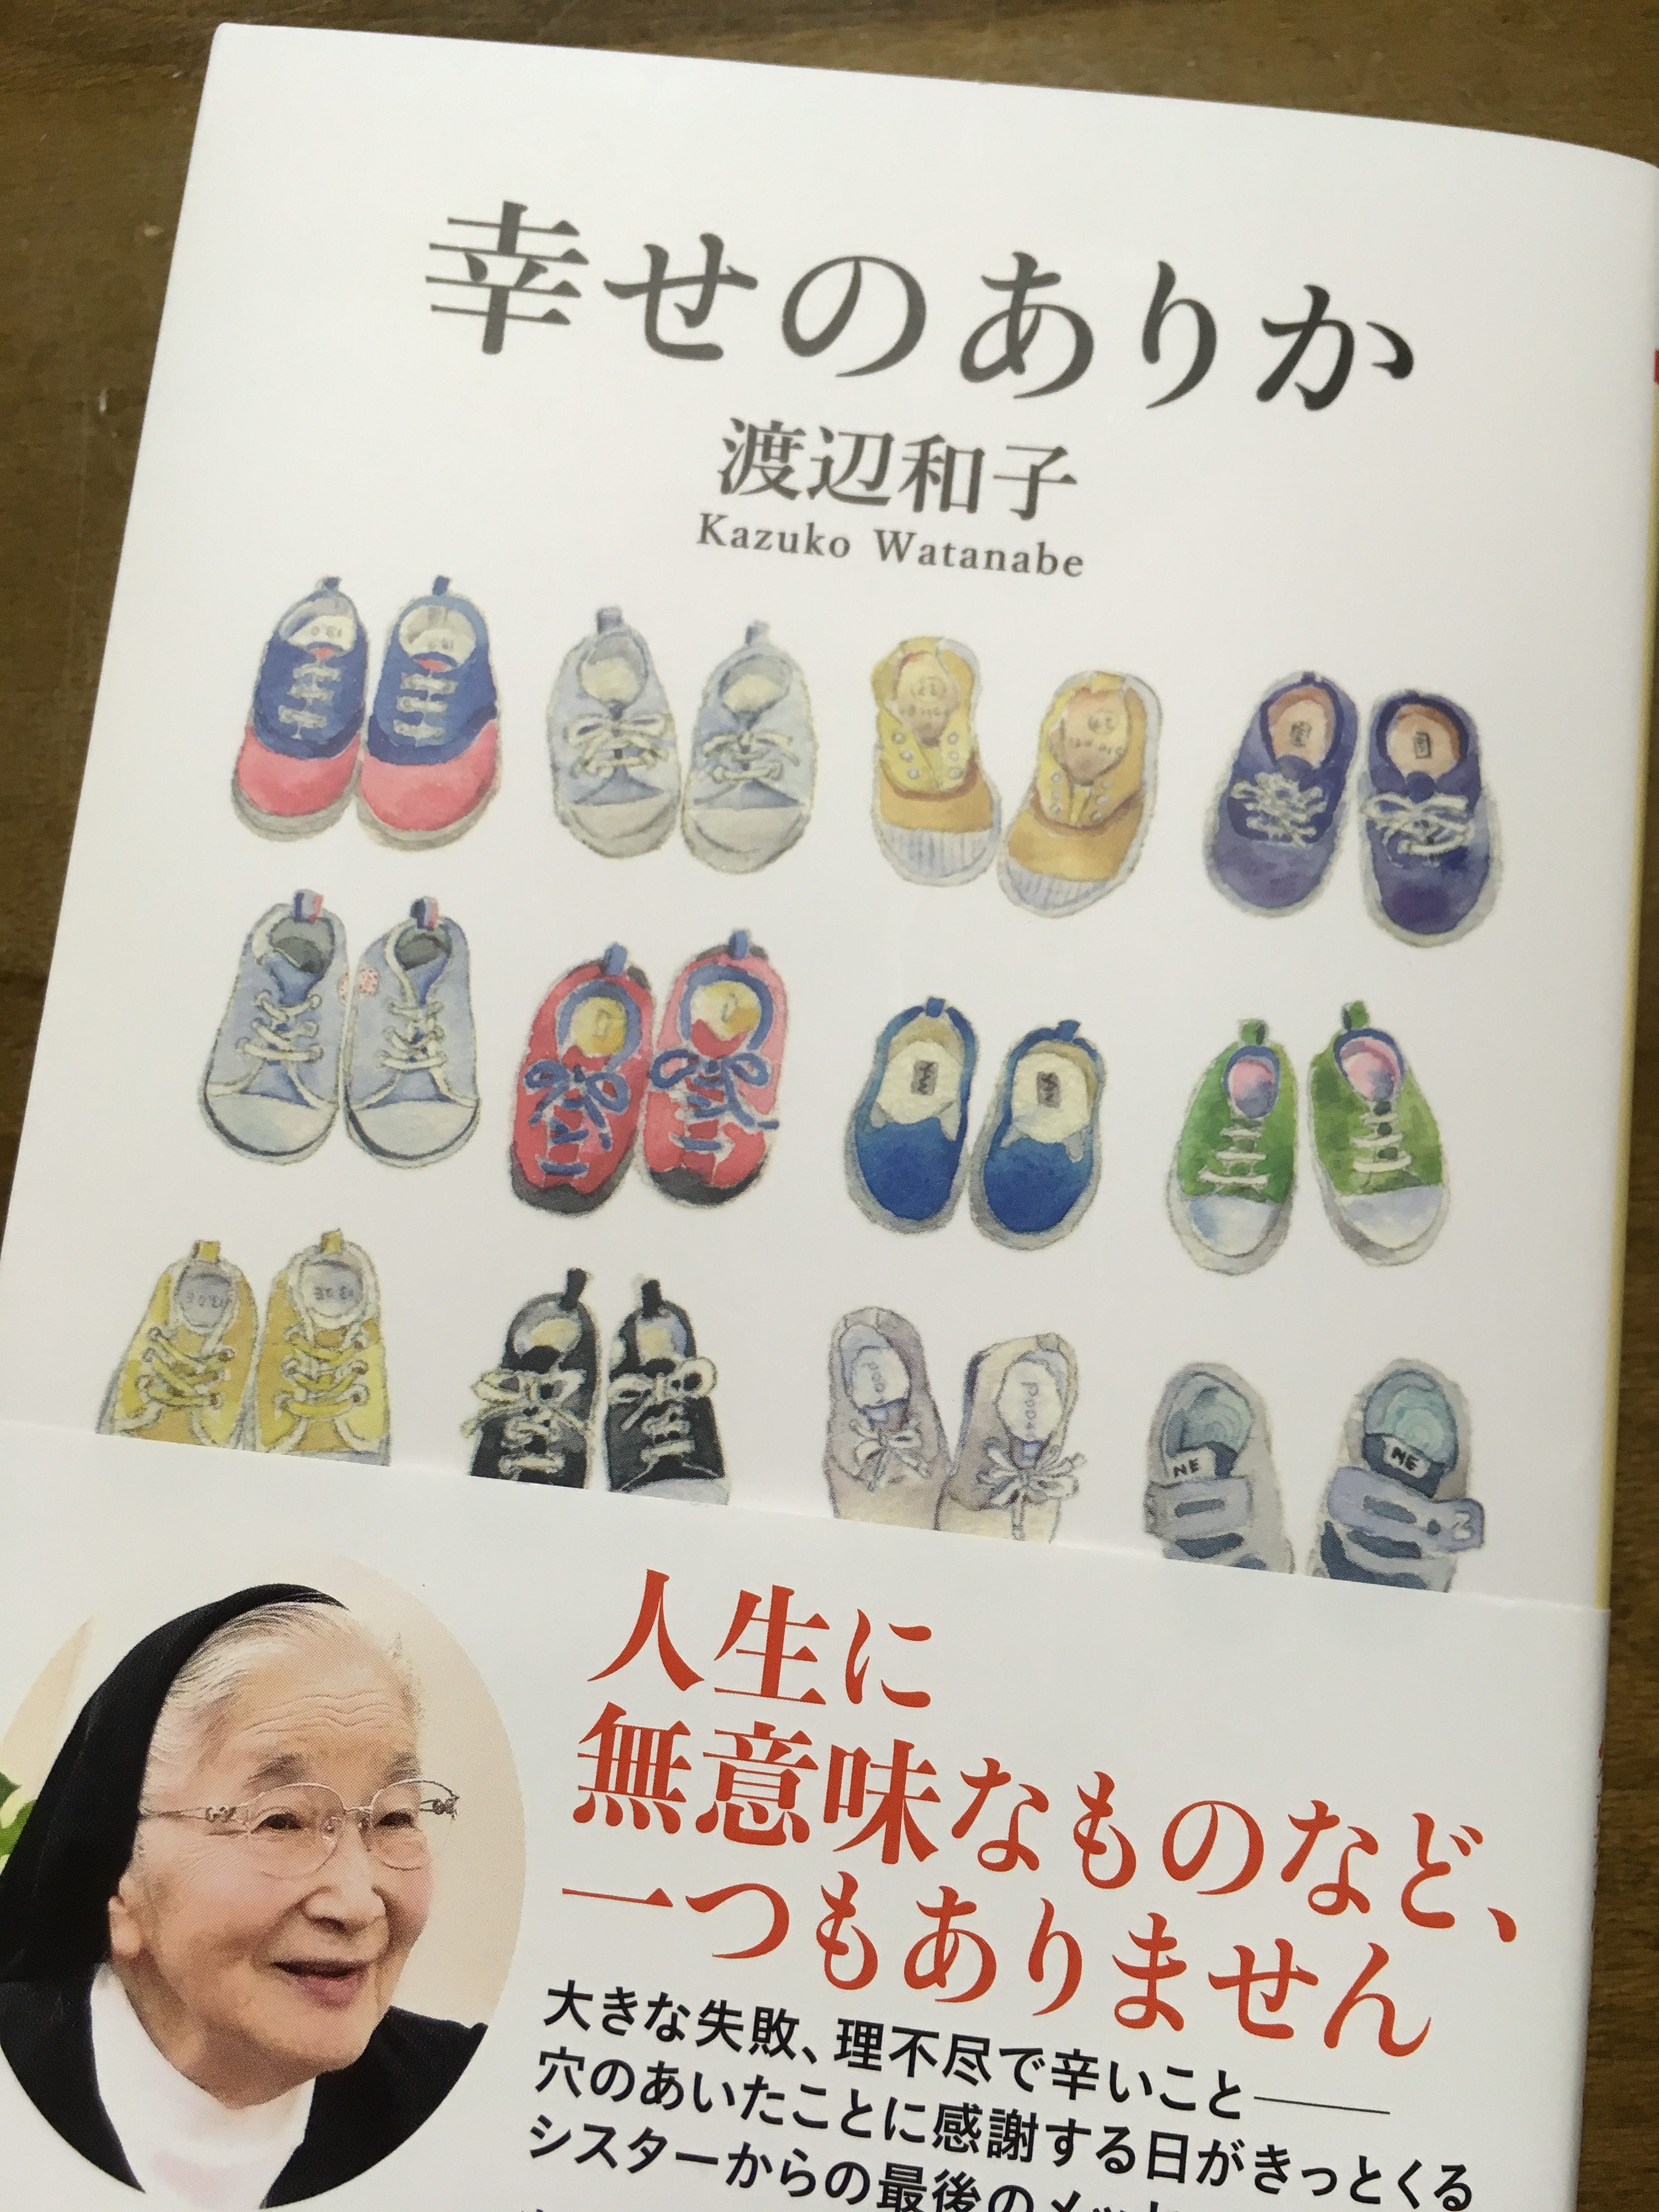 渡辺和子さん著「幸せのありか」は静かに心に響きました。